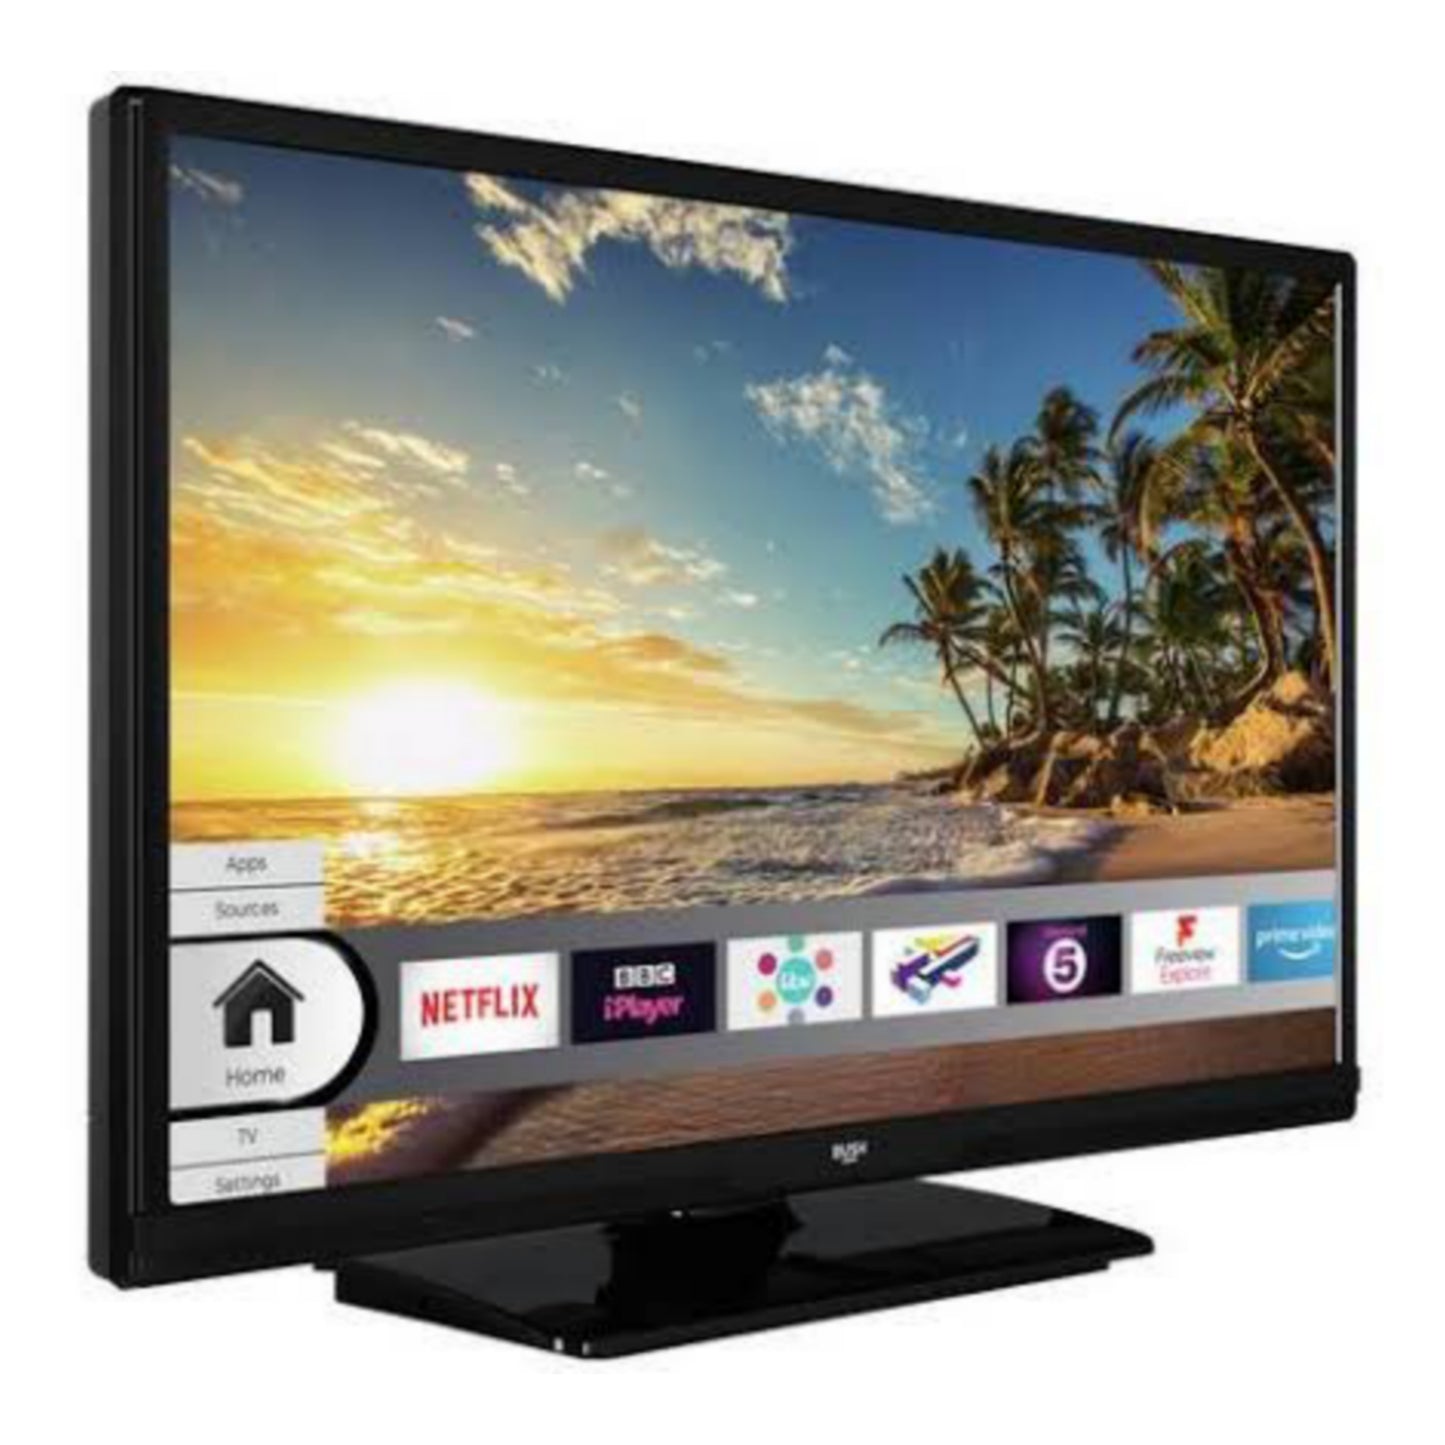 BUSH 24 pouces ELED24HDS Smart TV LED Full HD + WiFi intégré, mise en miroir d'écran - Utilisé au Royaume-Uni 